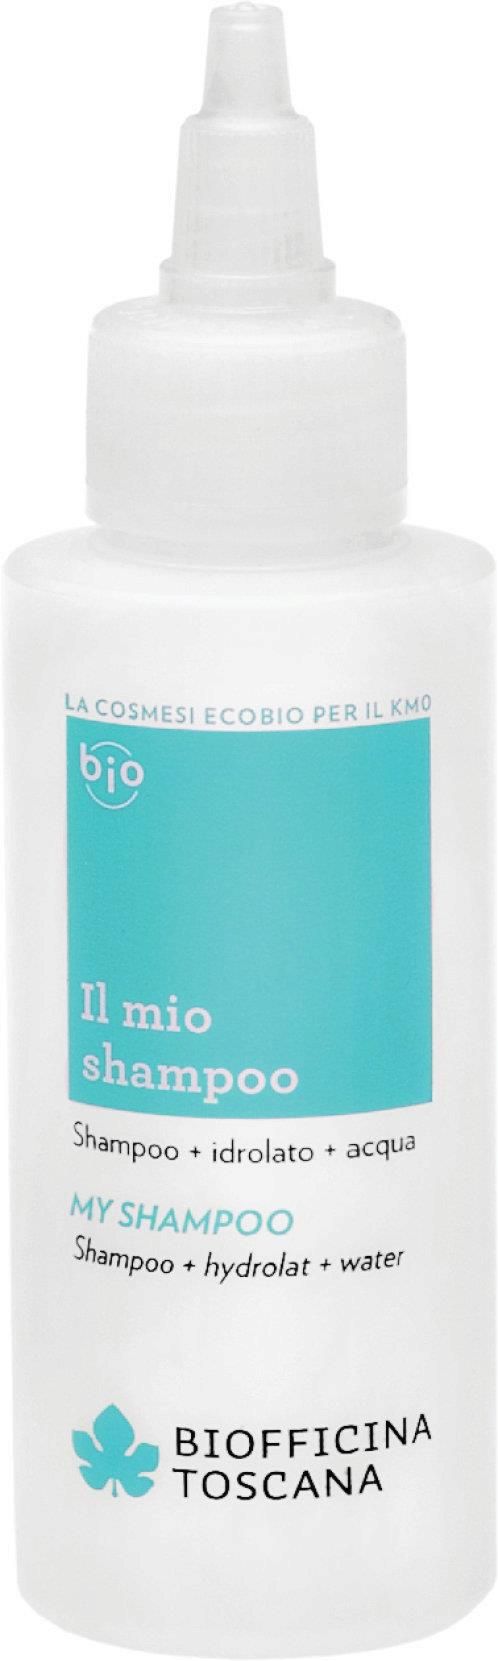 biofficina toscana szampon ceneo